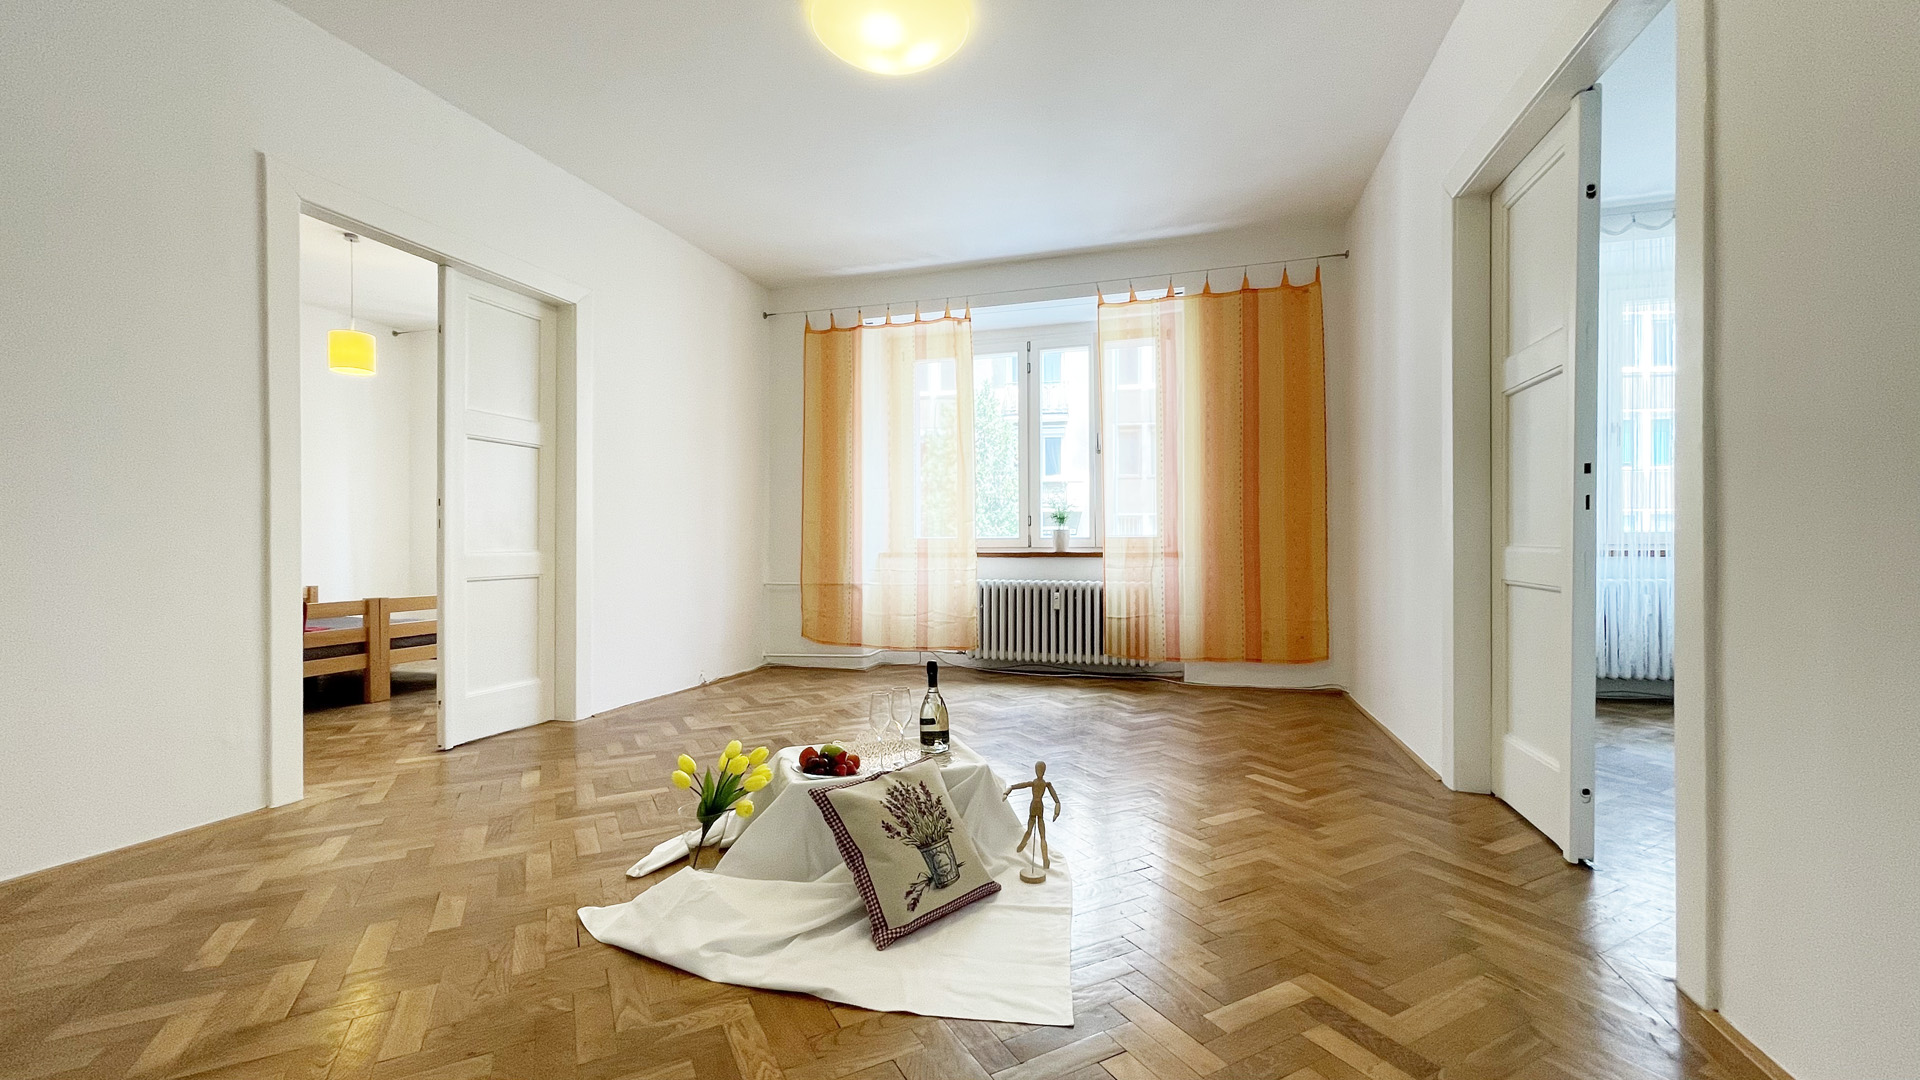 4 izbový byt na prenájom v centre Bratislavy – PRENAJATÉ